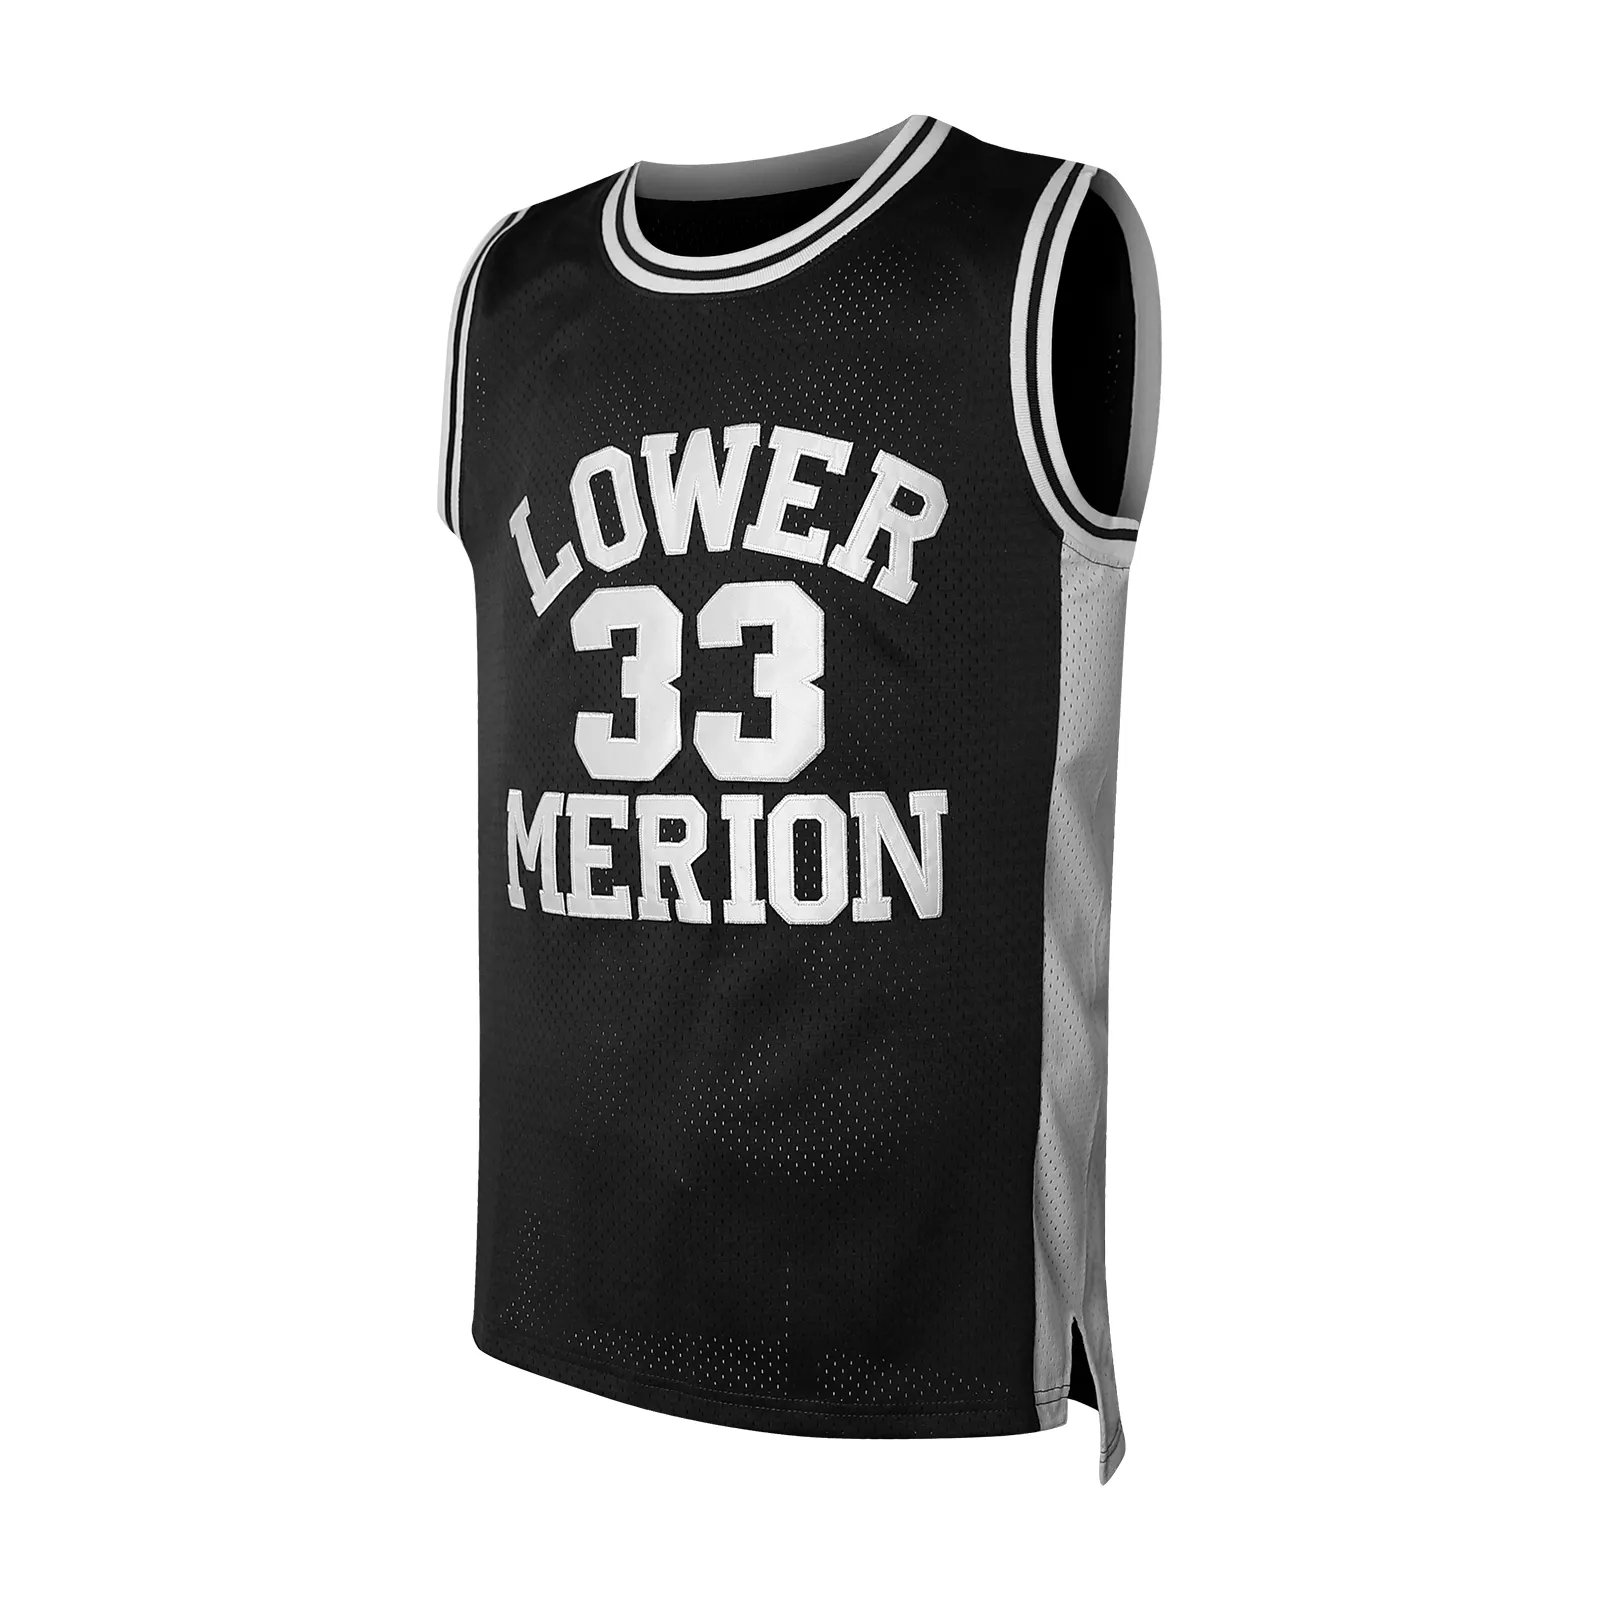 Sublimación personalizada impresa baloncesto Jersey Malla tela transpirable tu equipo Jersey baloncesto Jersey